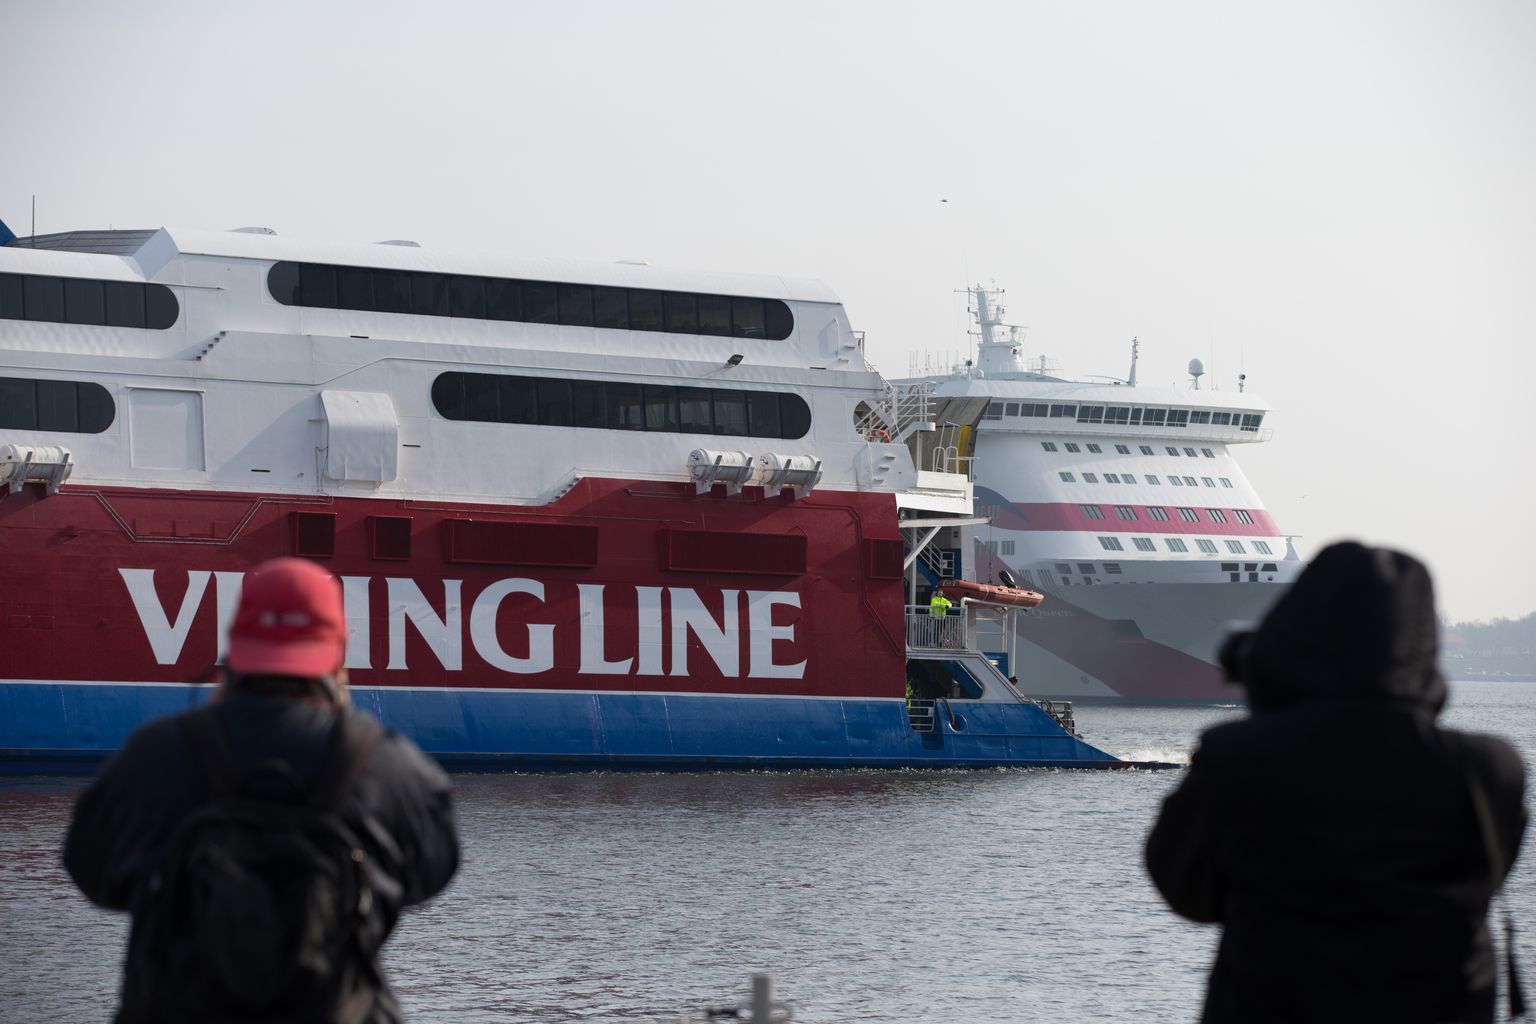 Viking Line suutis eelmisel aastal reisijate arvu kasvatada